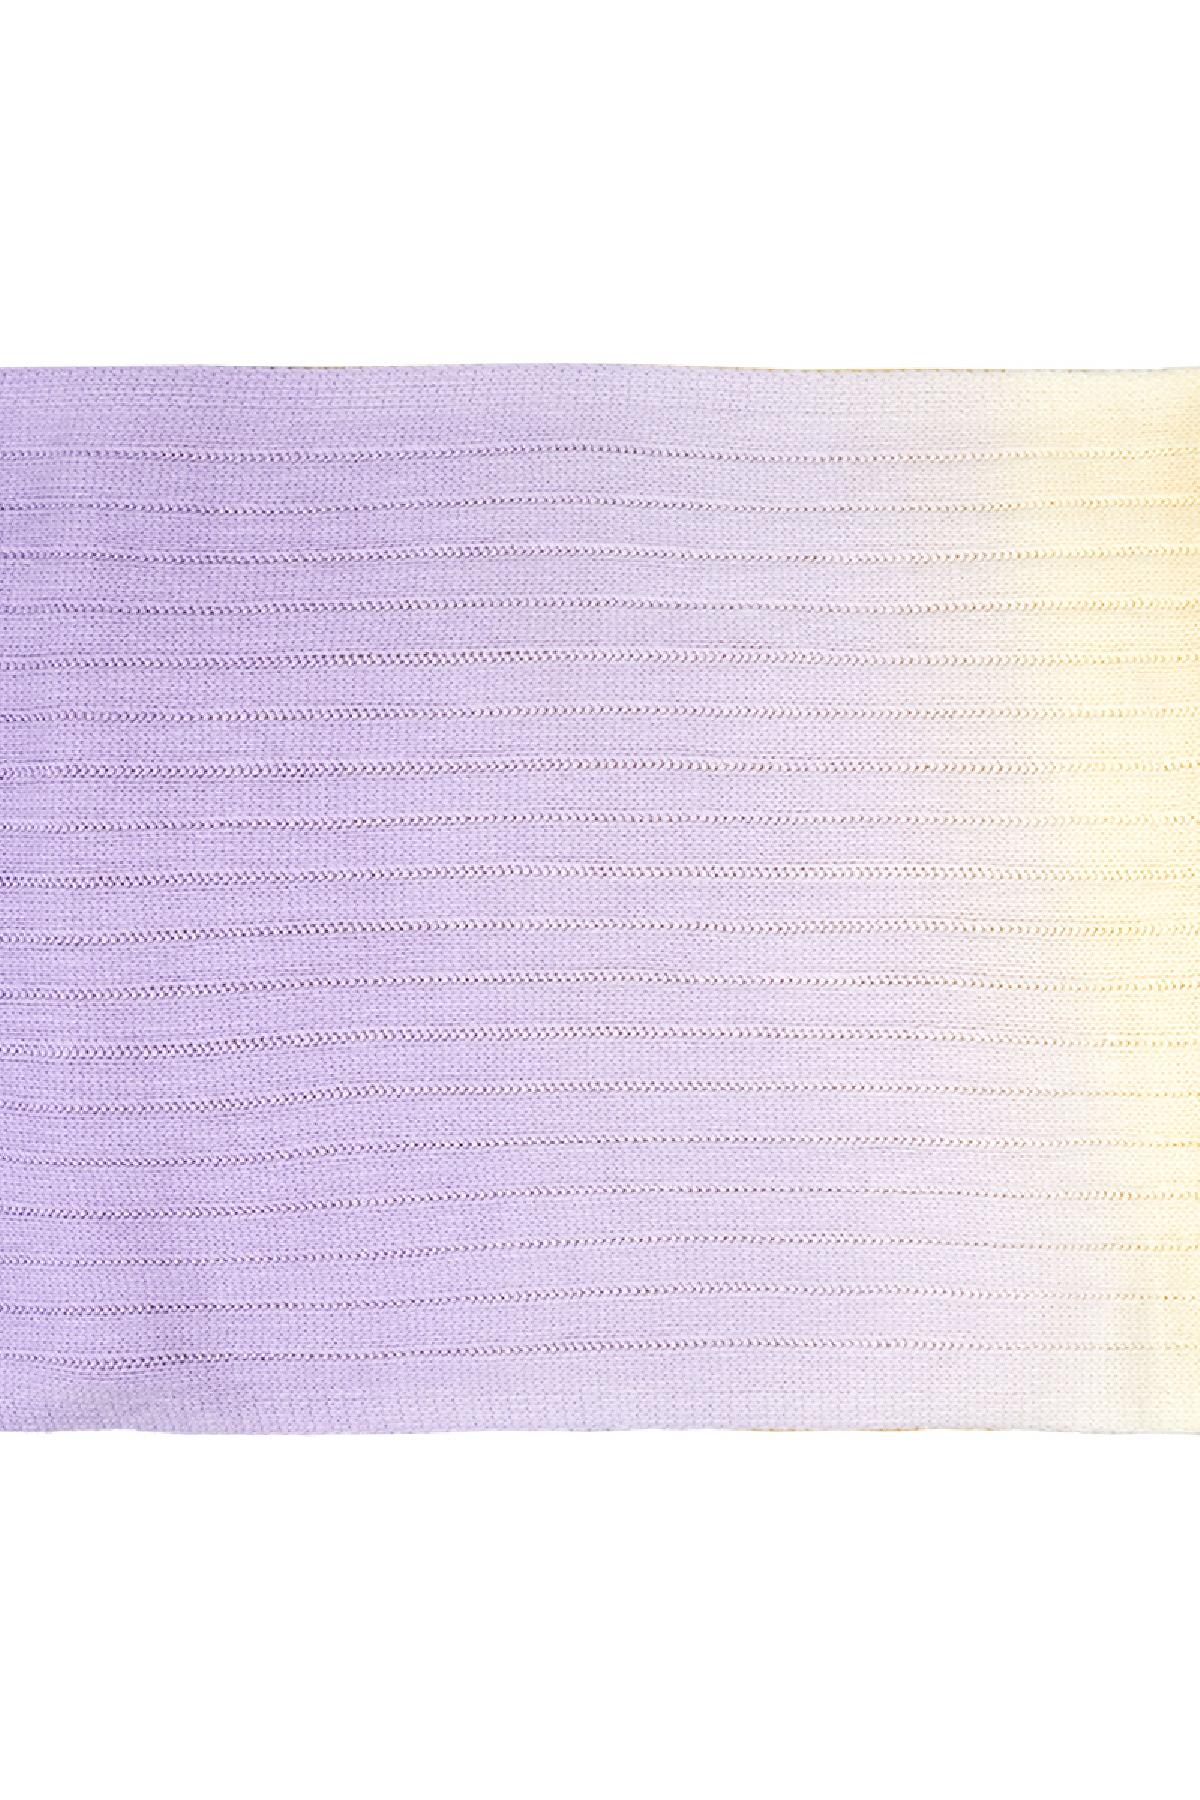 Kravat boya eşarp Purple Acrylic h5 Resim3